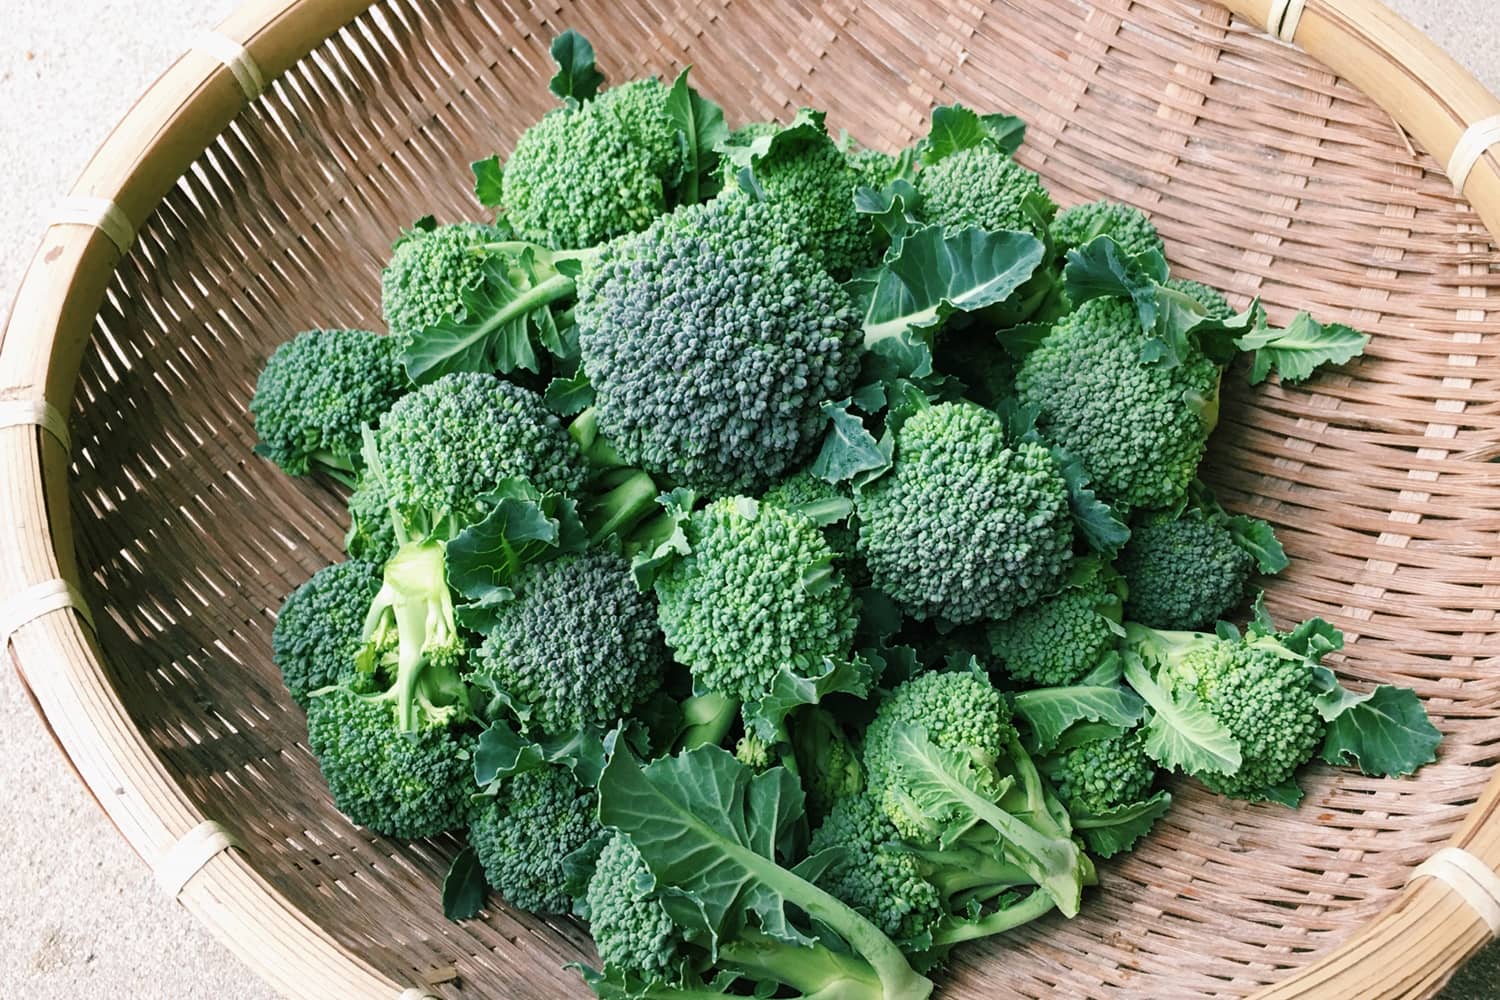 【野菜力診断】Q.ブロッコリーはおもにどこを食べる野菜?